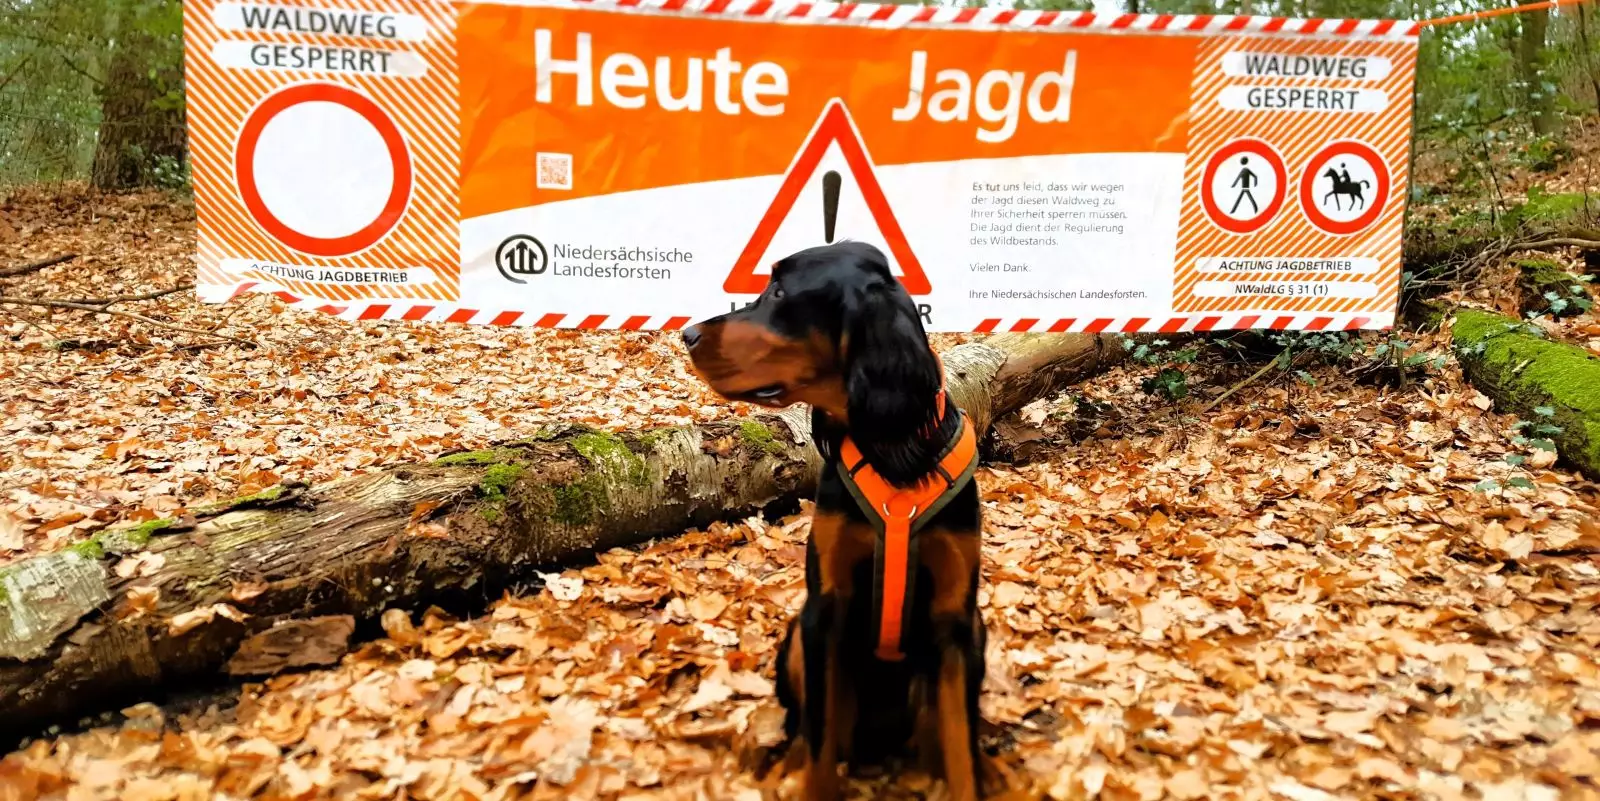 An den Waldeingängen weisen Warnbanner auf den laufenden Jagdbetrieb hin.  Foto: Niedersächsische Landesforsten